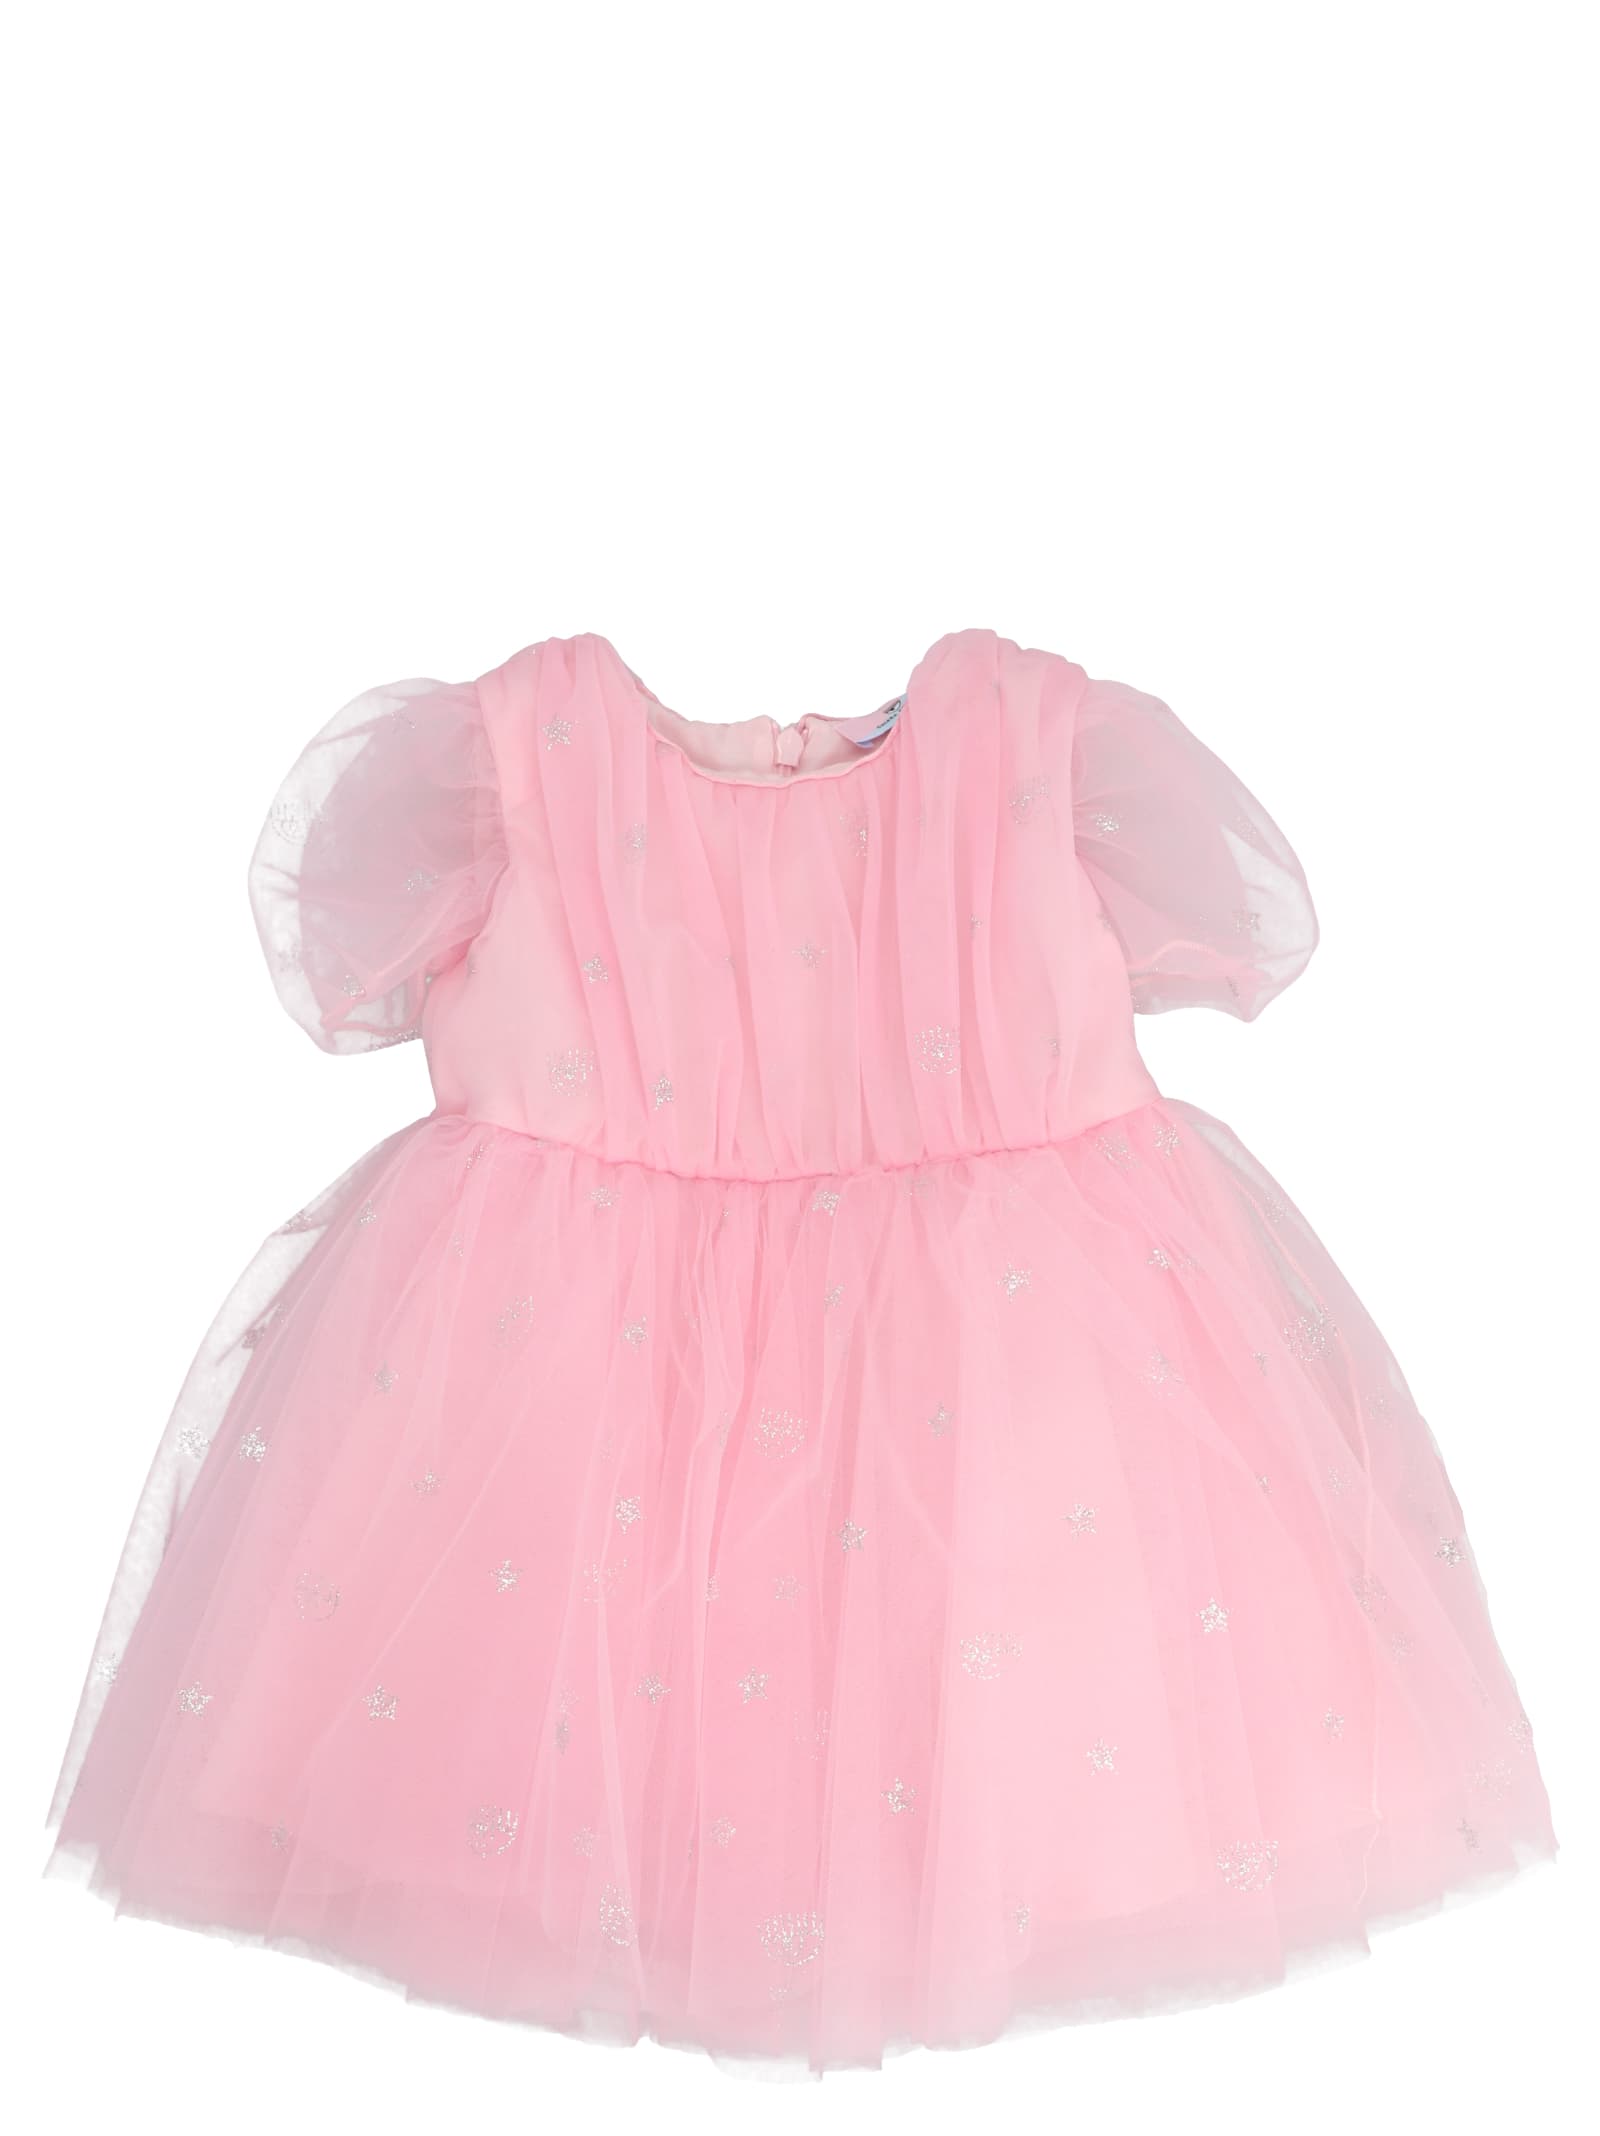 Chiara Ferragni Kids' Eye Star Dress In Pink